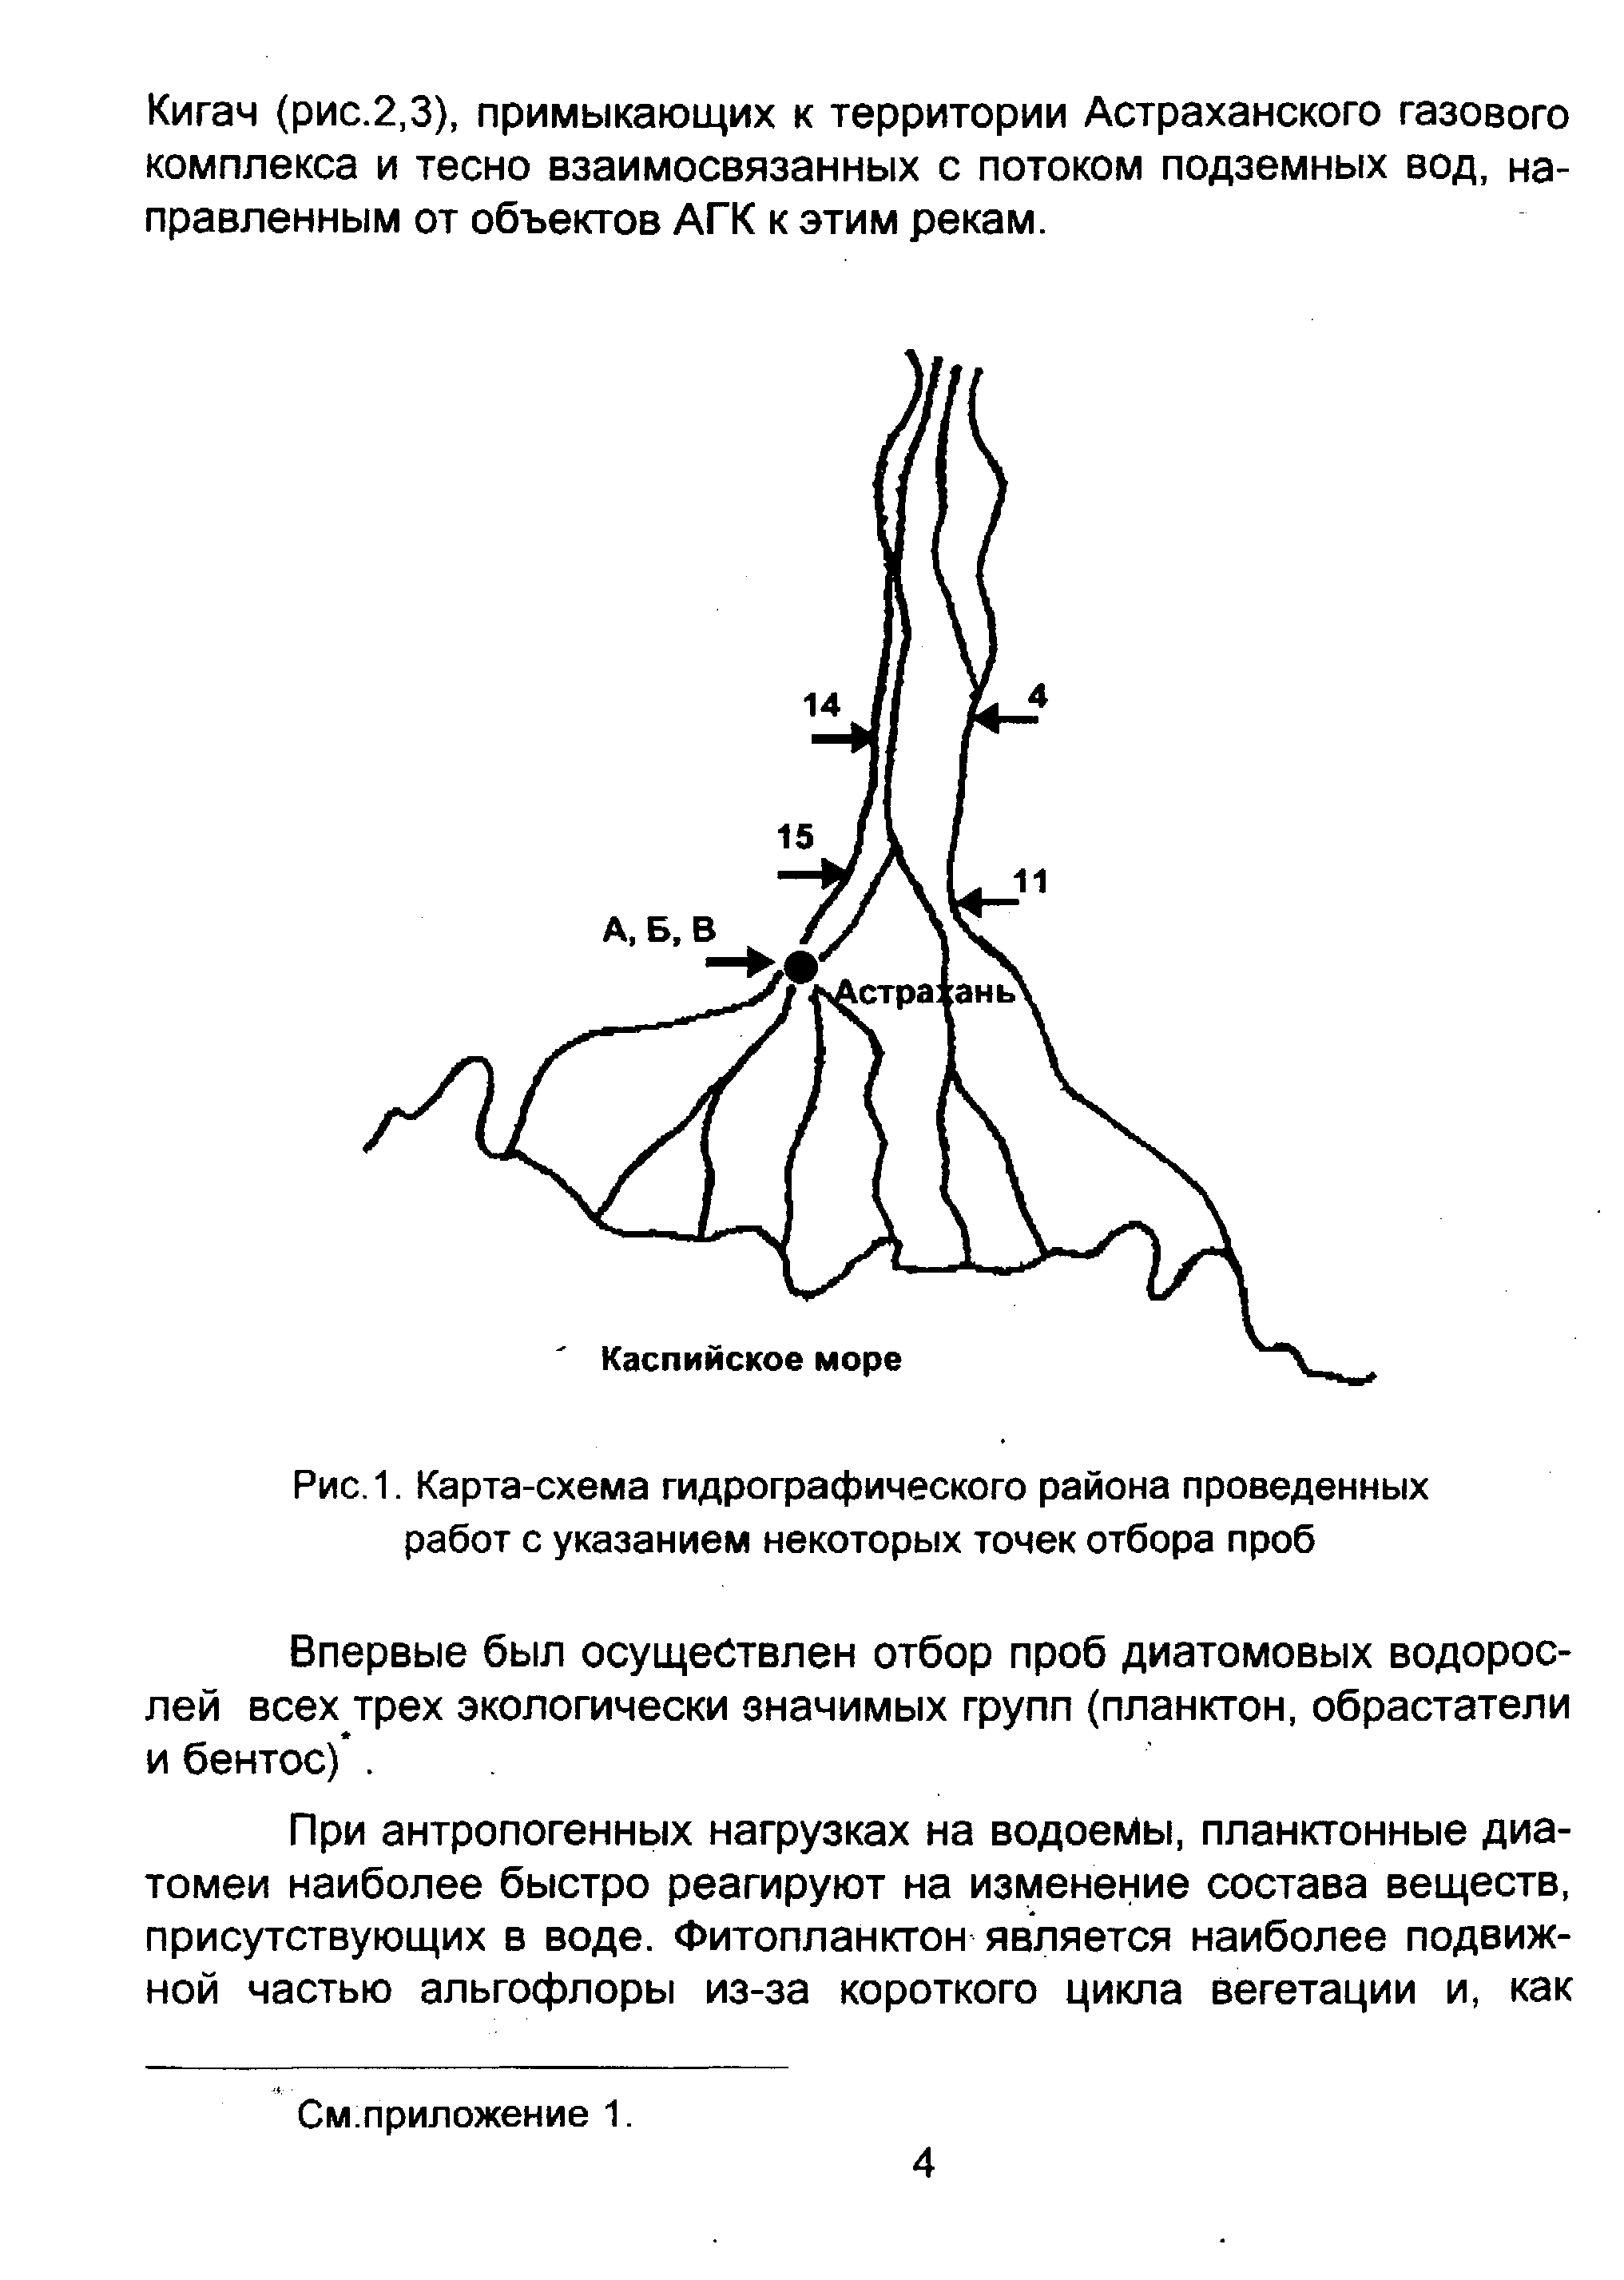 Кигач (рис.2,3), примыкающих к территории Астраханского газового комплекса и тесно взаимосвязанных с потоком подземных вод. направленным от объектов АГК к этим рекам.